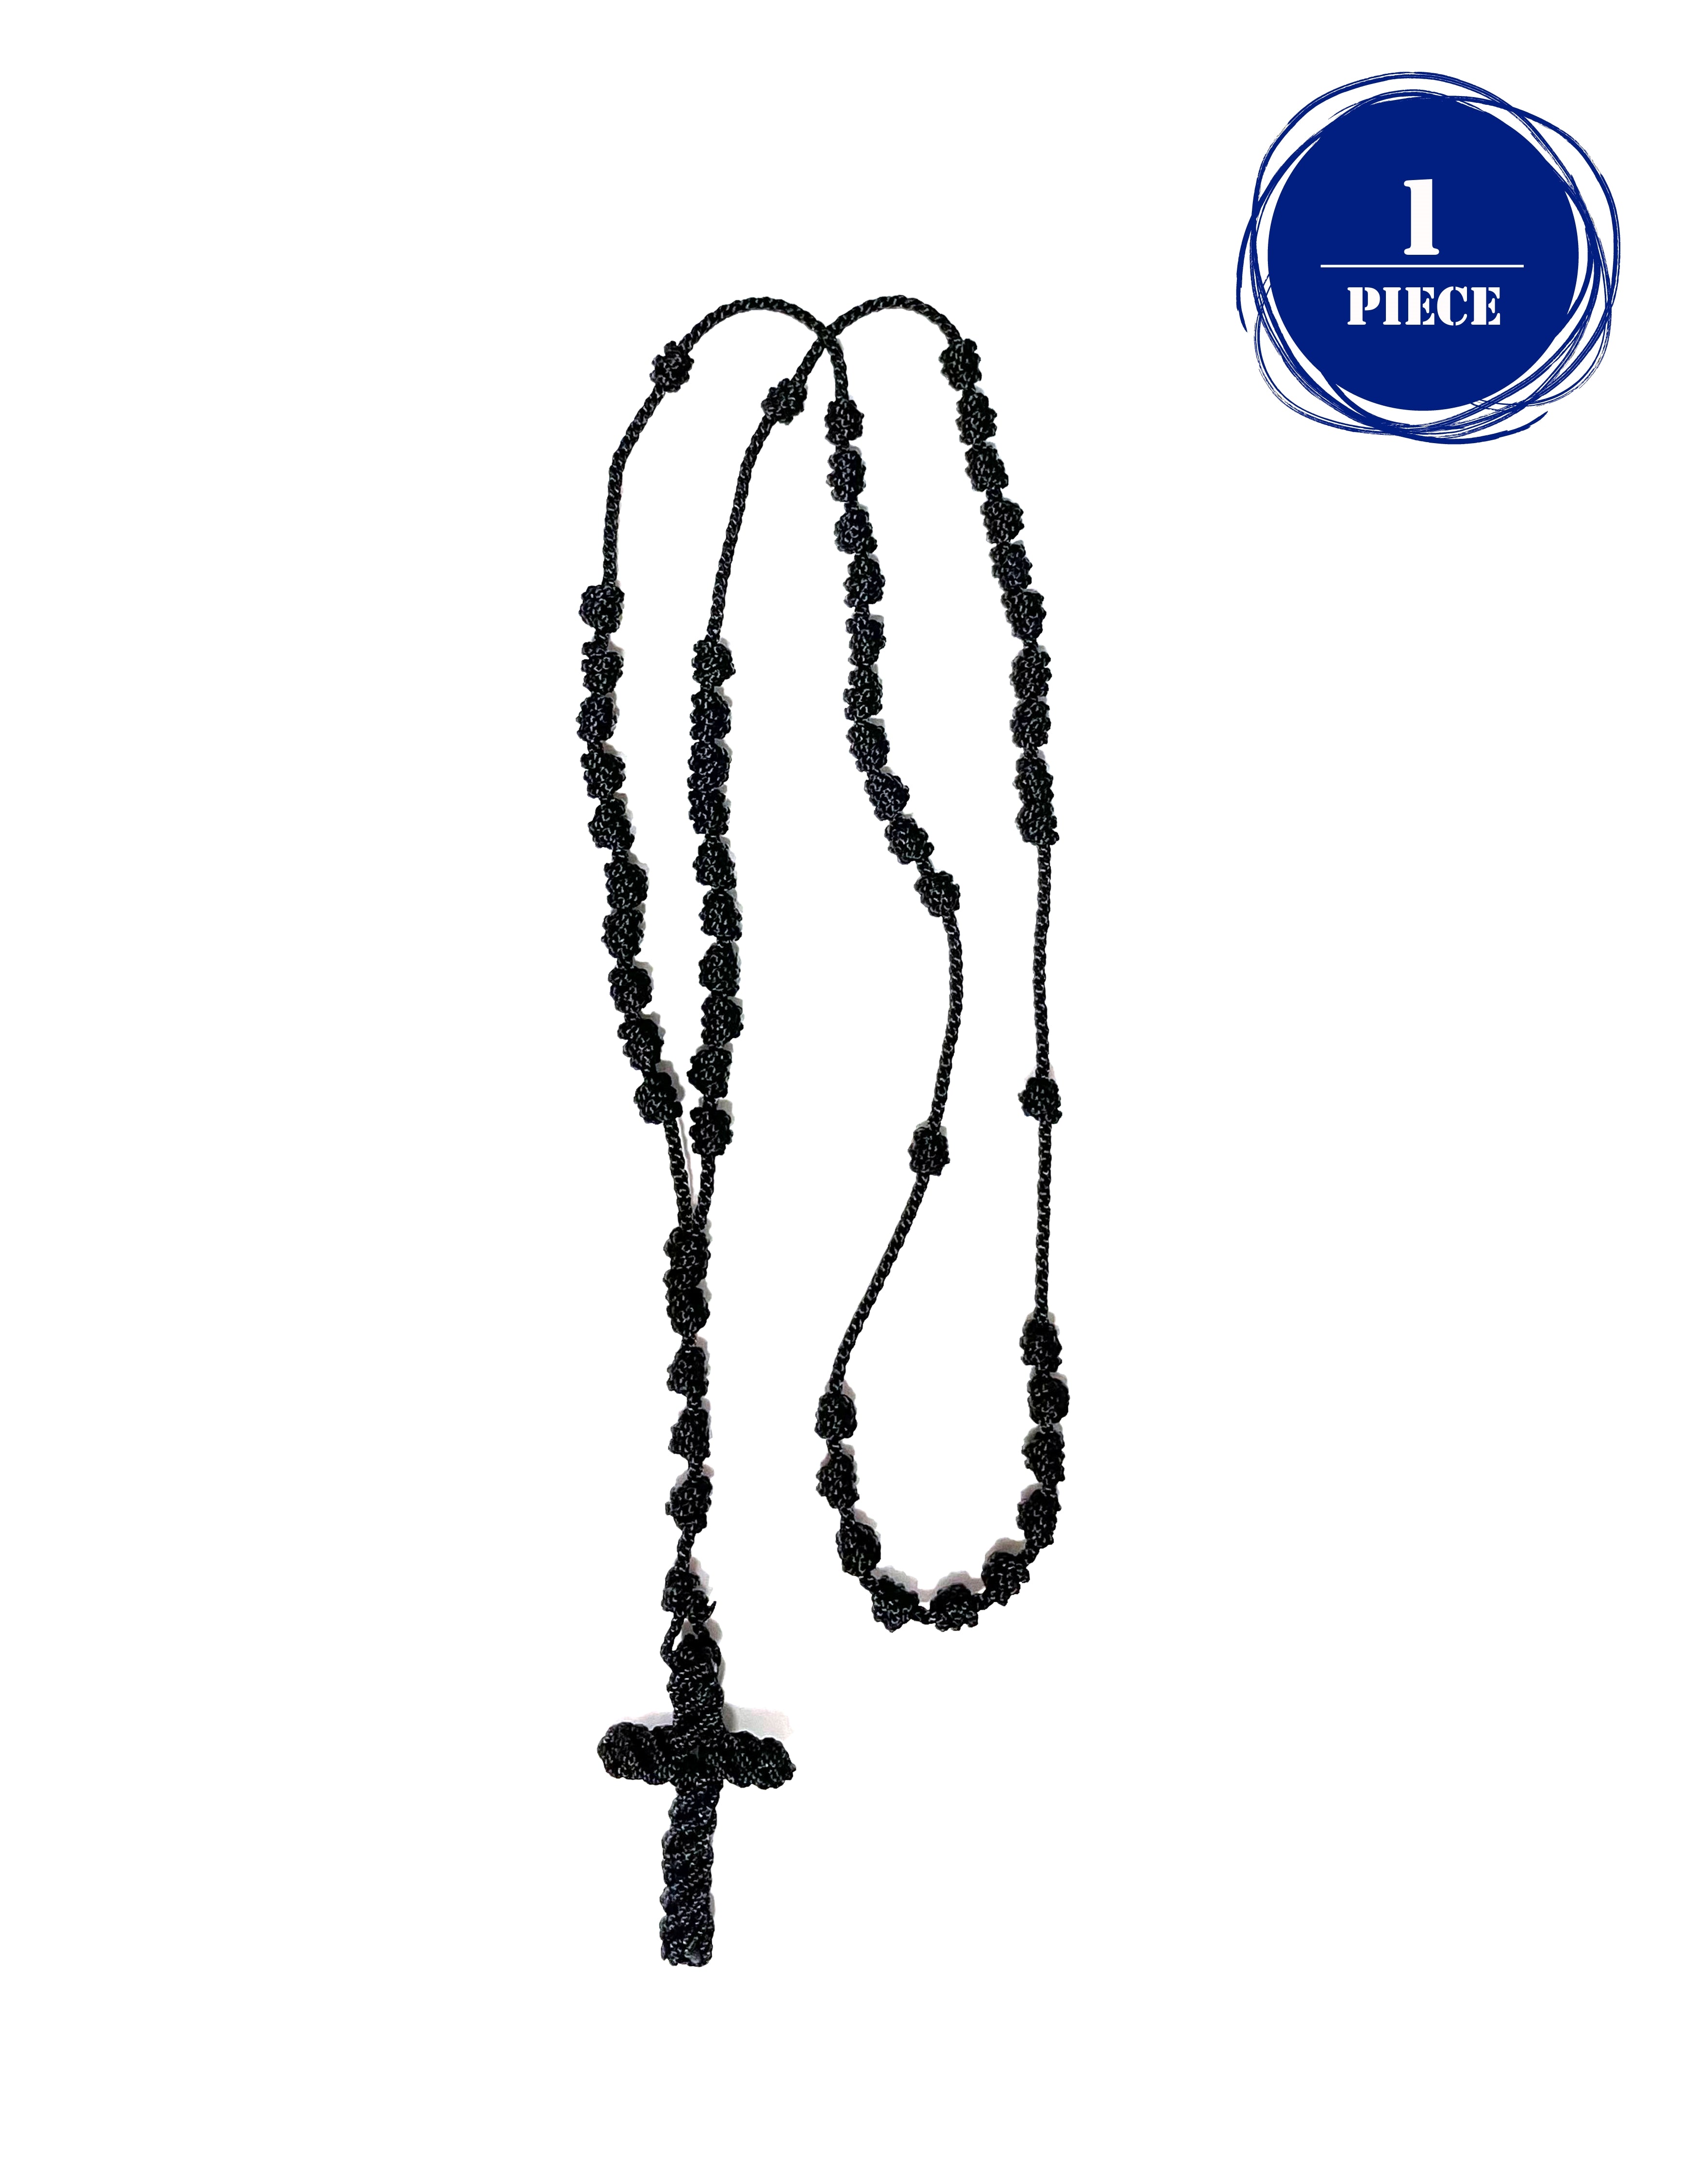 Knotted Rosary - Cord Rosary, Thread Rosary - Handmade Rosary. Rosarios de cordón anudado Y Cruz Tejida Black / 1 Piece